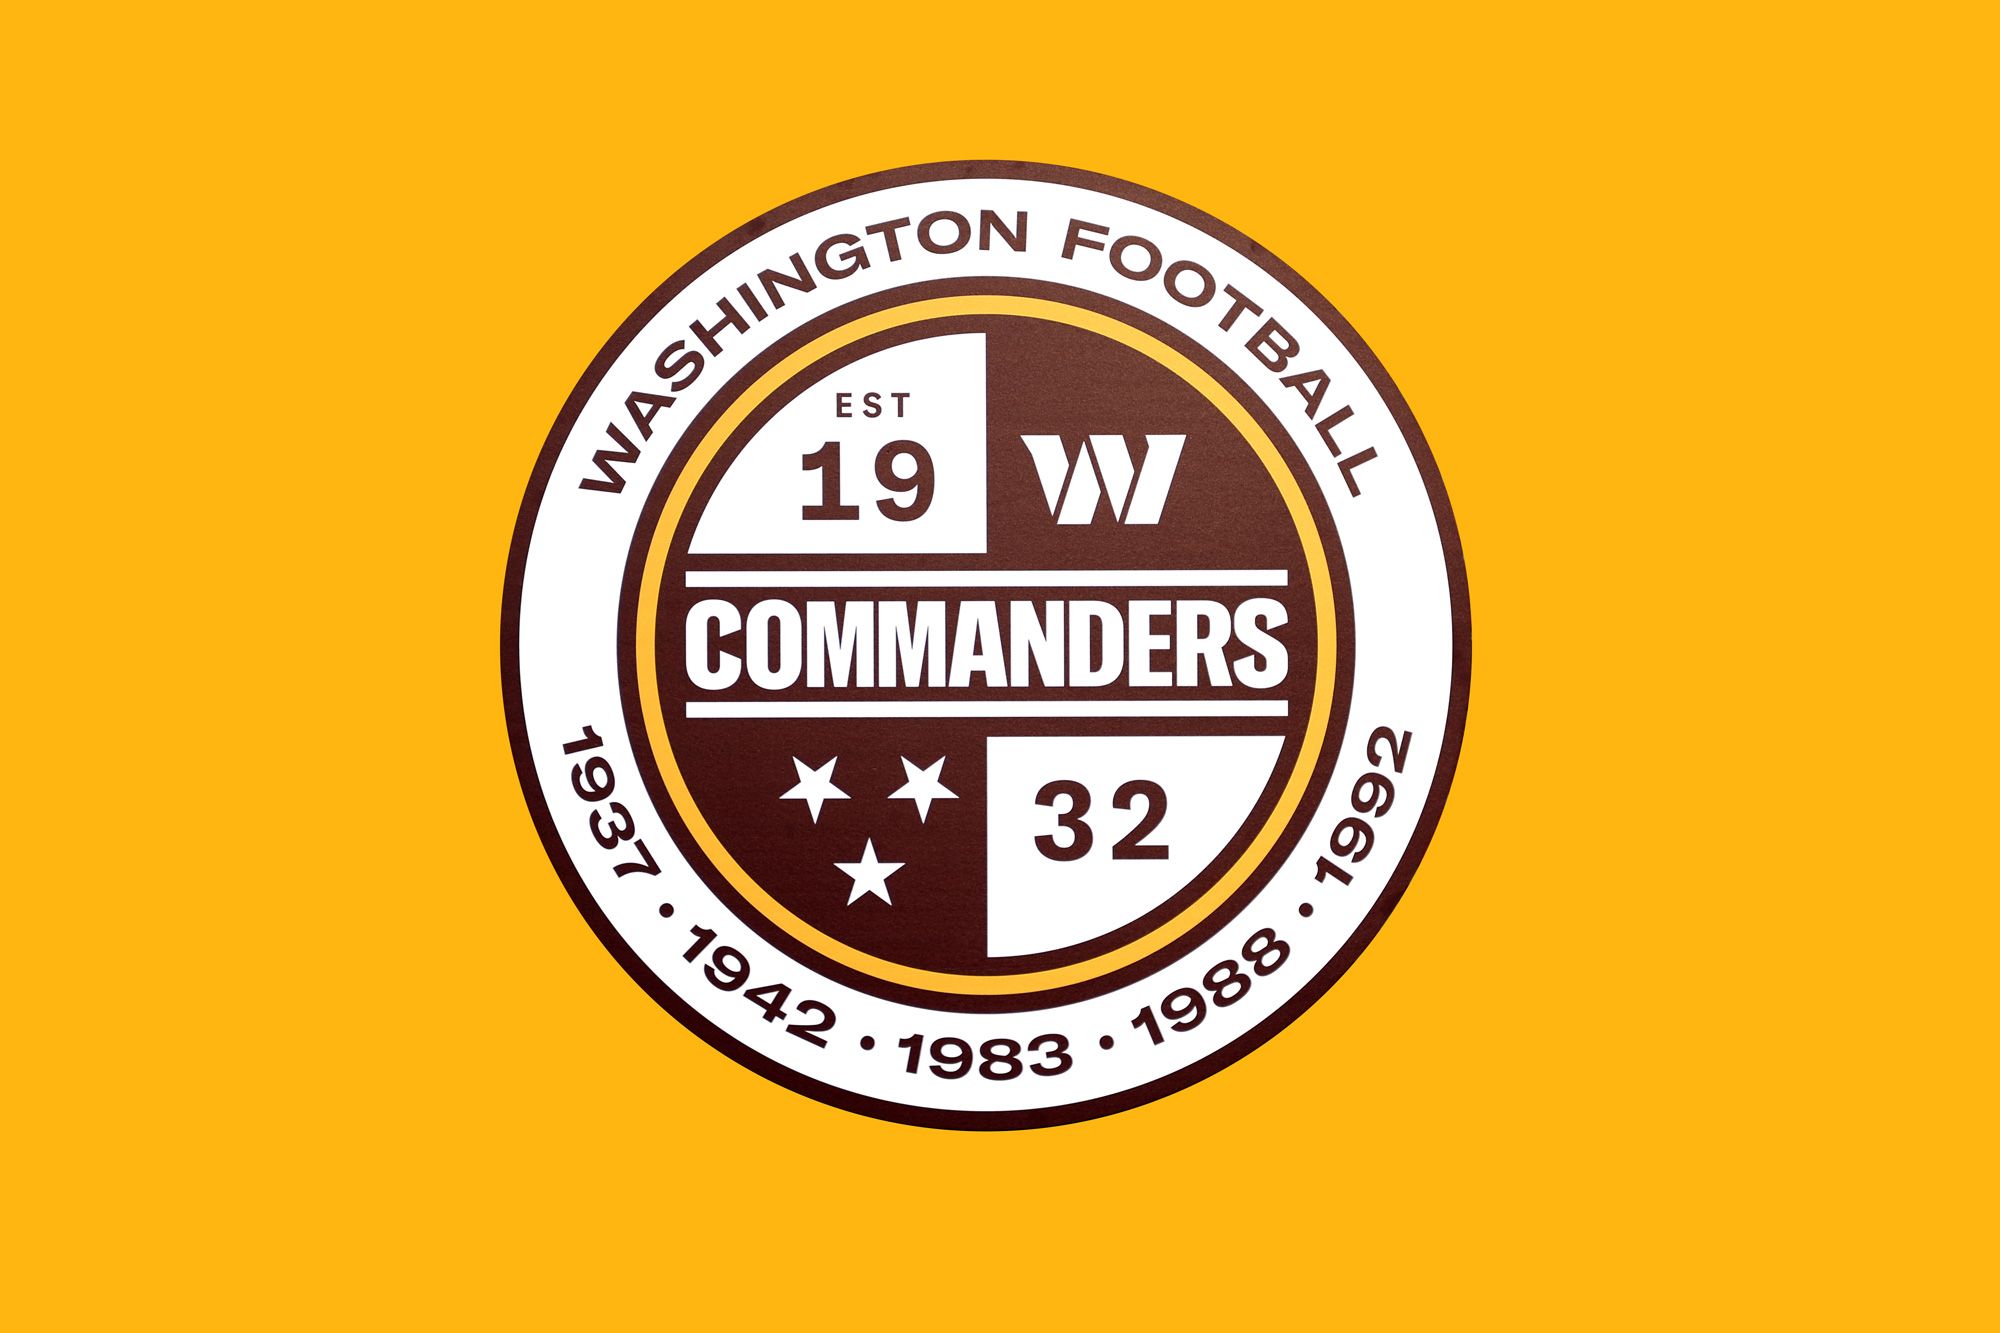 washington commanders logo images